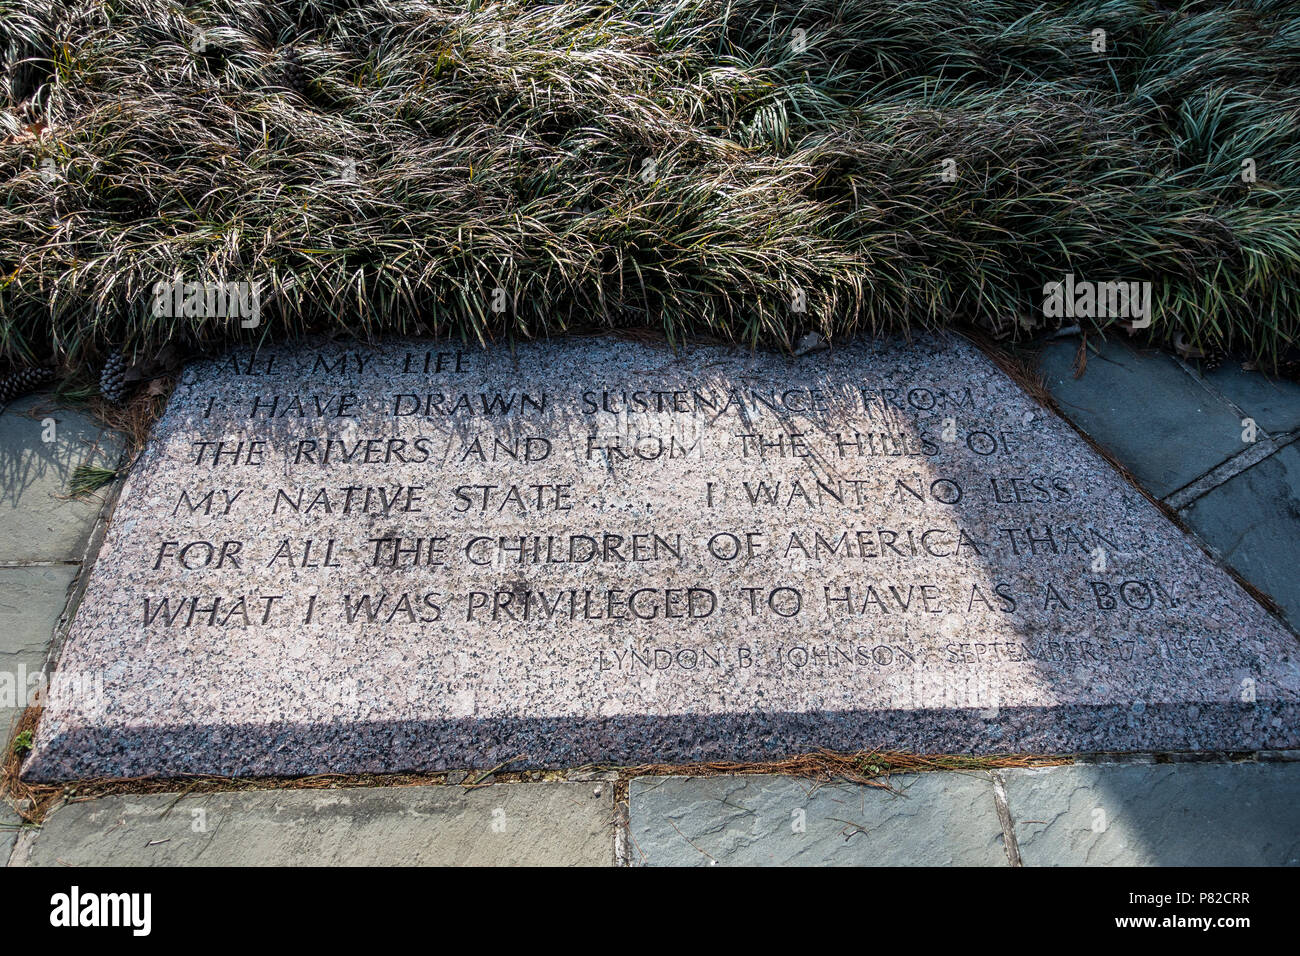 Eine Inschrift in Granit an der LBJ Memorial Grove auf dem Potomac. Es liest: "Mein ganzes Leben habe ich systenance von den Hügeln von meiner nativen Zustand gezeichnet haben. . . . Ich möchte nicht weniger für alle Kinder von Amerika als das, was ich als Junge zu haben.' Es ist vom 17. September 1964. Gewidmet der 36. US-Präsident Lyndon B. Johnson, Lyndon Baines Johnson Memorial Grove auf dem Potomac sitzt in Lady Bird Johnson Park auf Columbia Island, mit Blick auf die Skyline von Washington DC. Es war am 6. April 1976 eingeweiht. Stockfoto